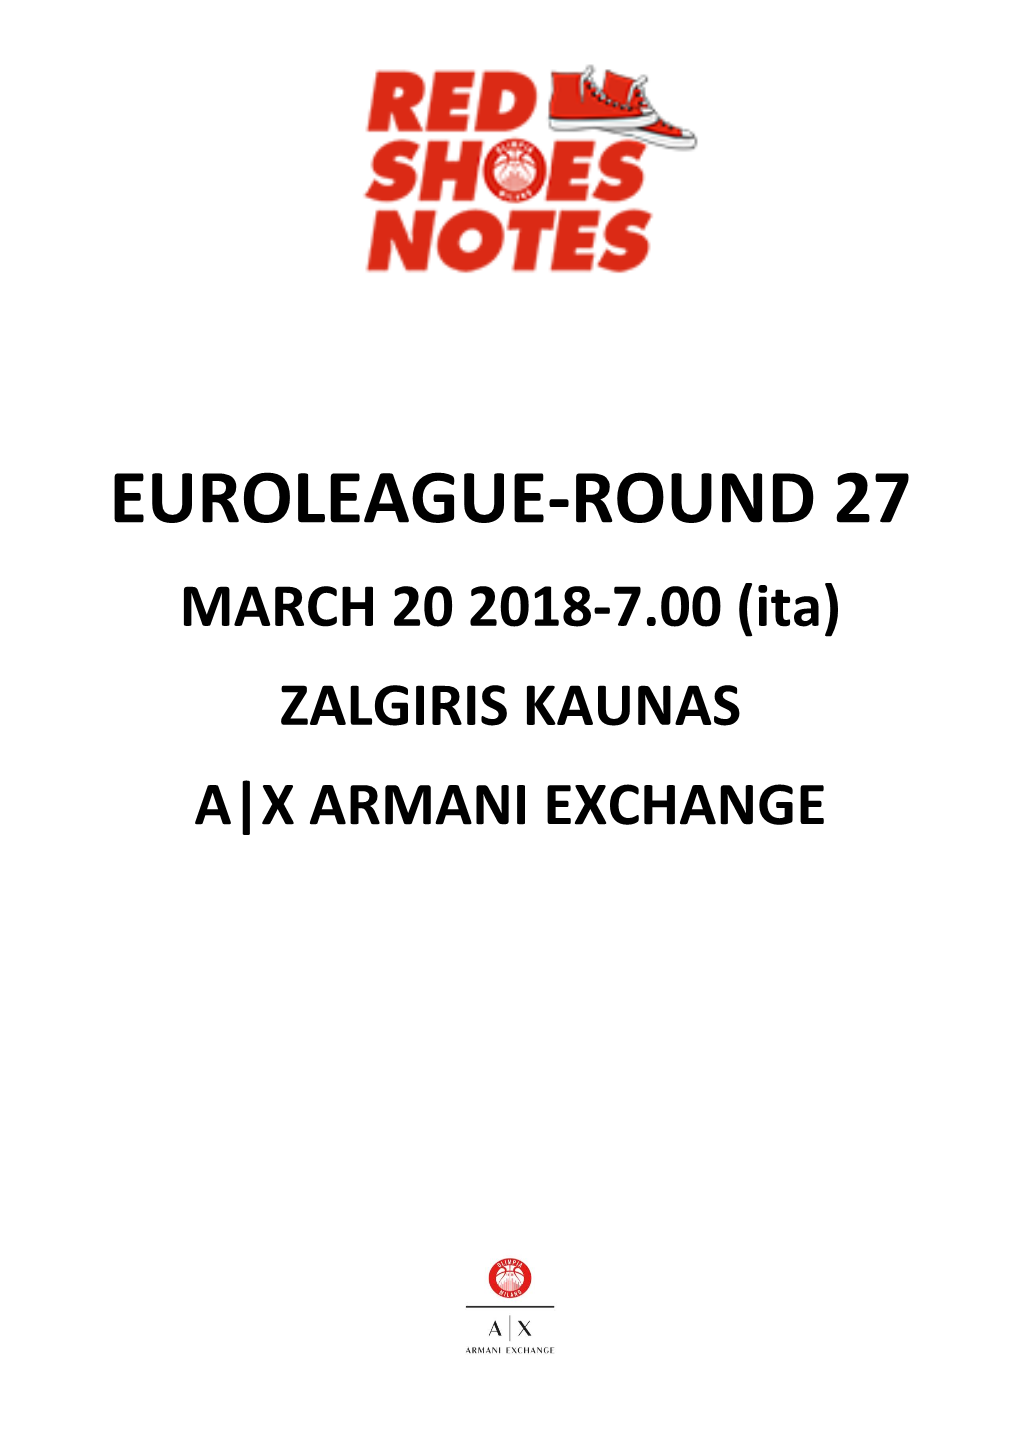 Zalgiris-Milano Game Notes